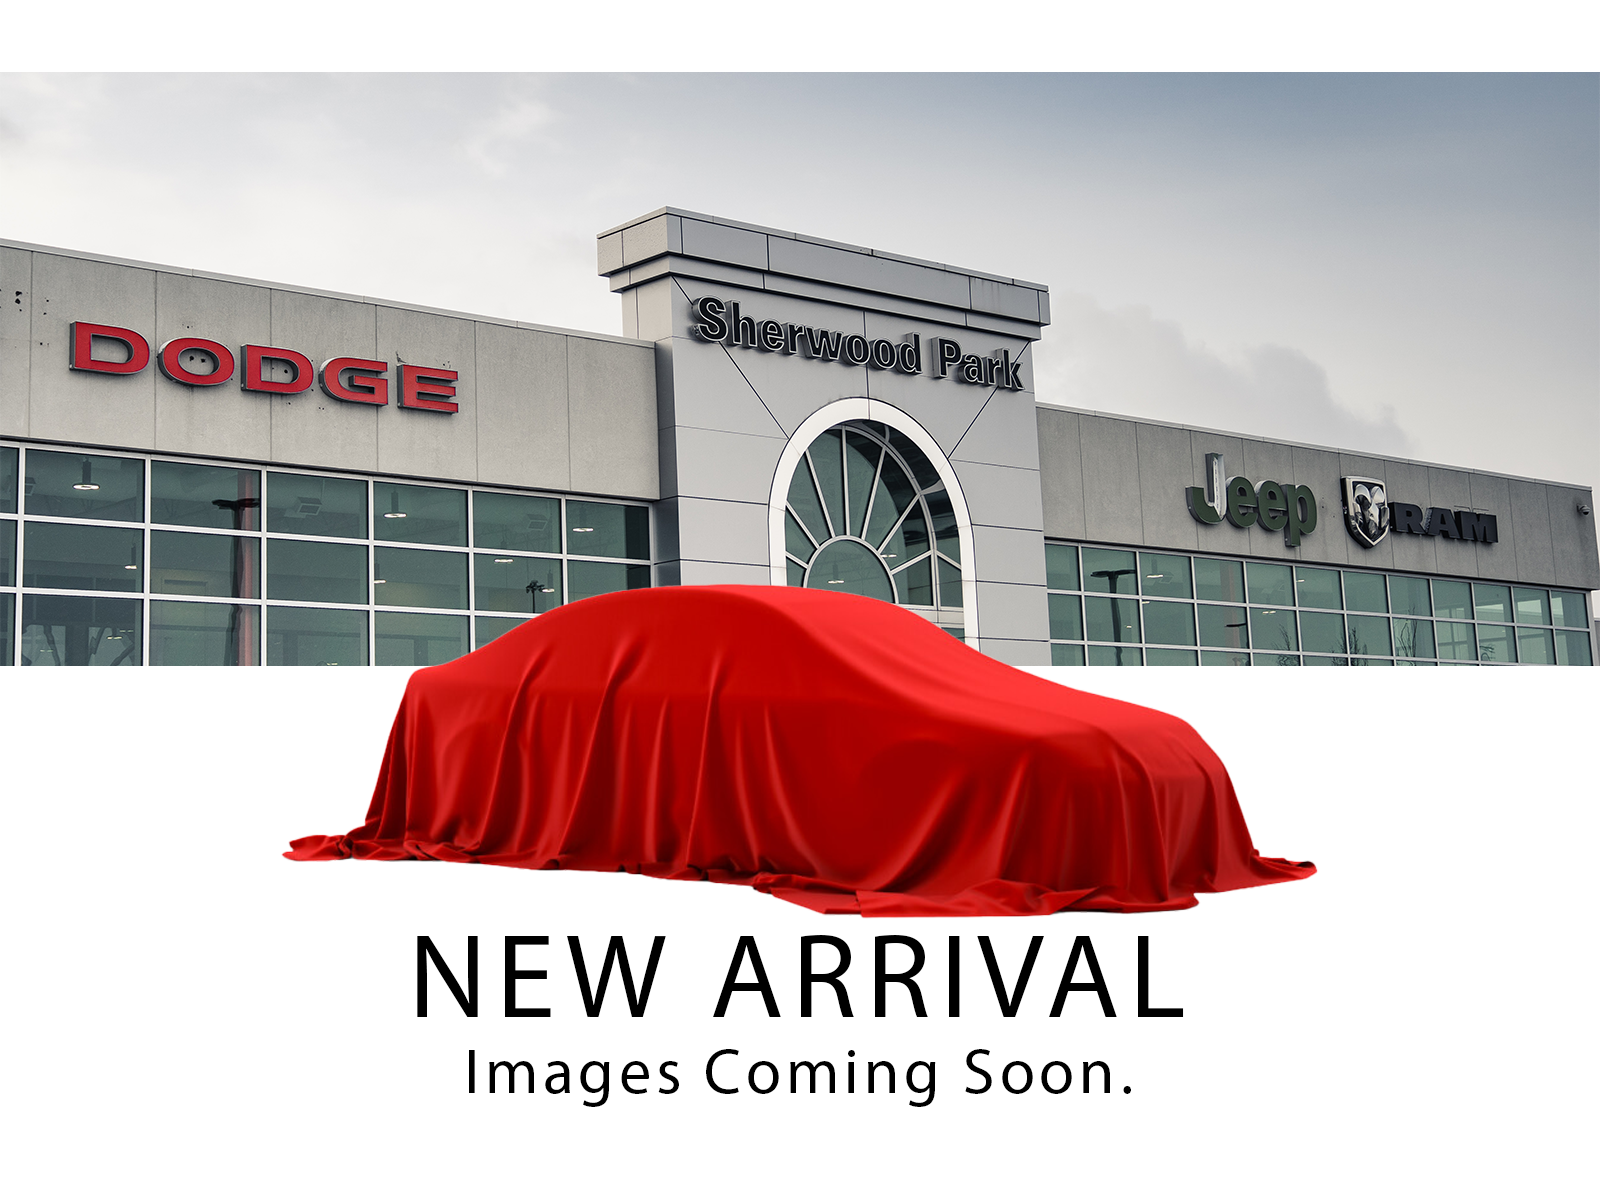 2022 Dodge Charger SXT